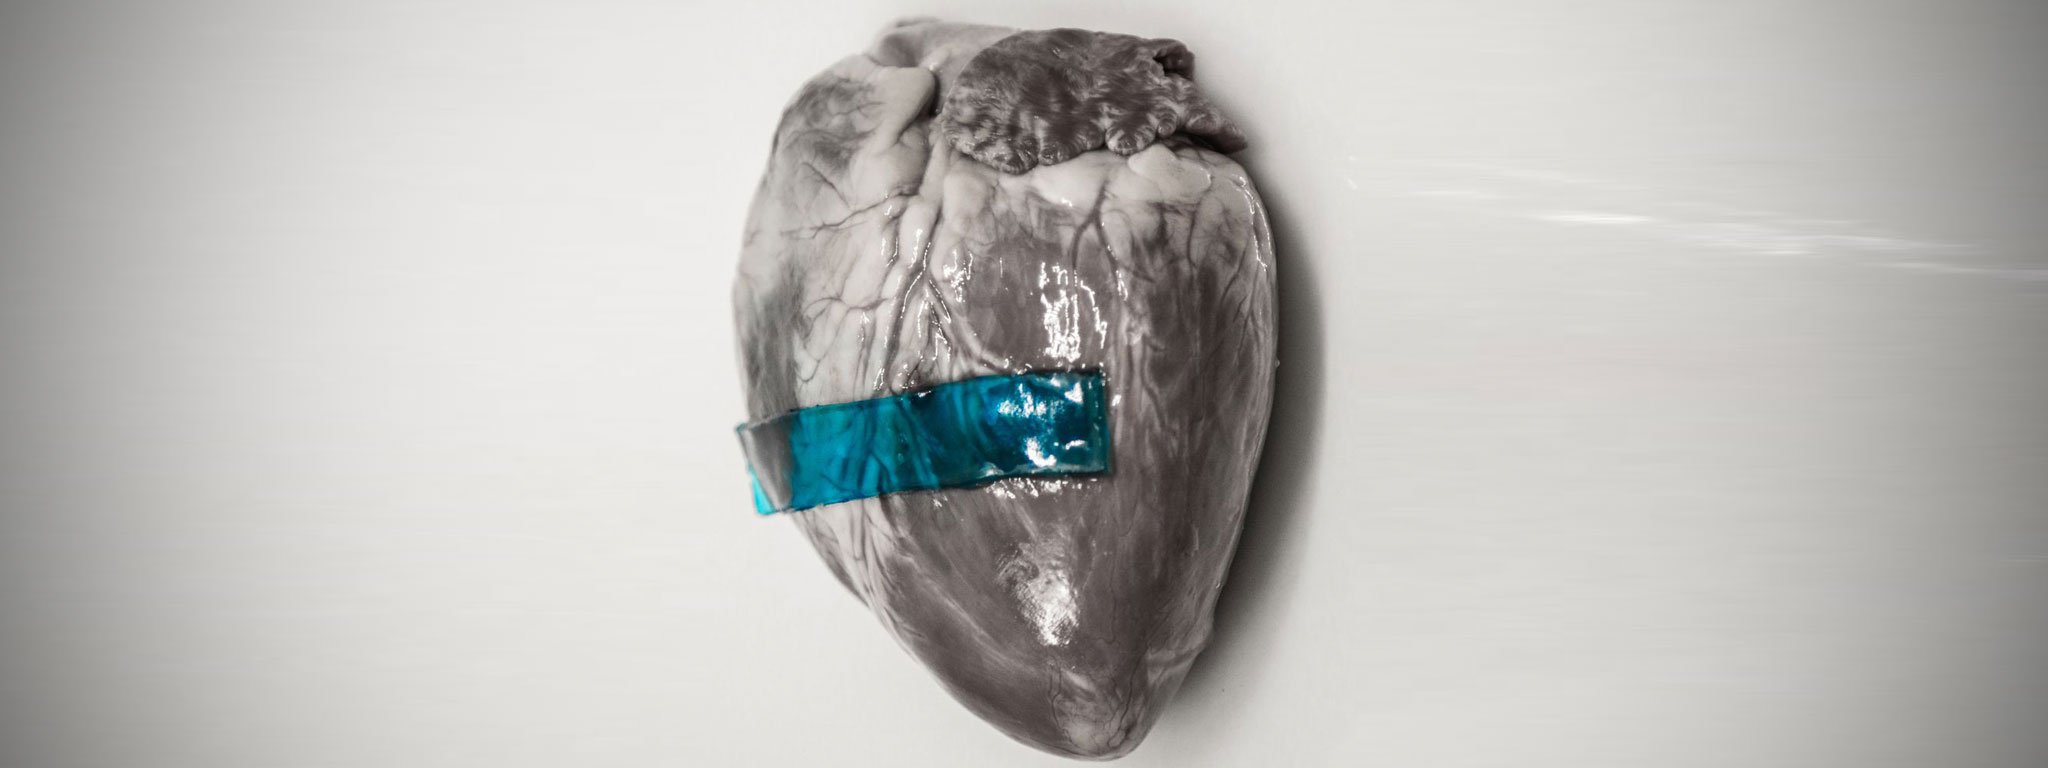 Phát triển thành công "băng keo" có thể hàn gắn vết thương của trái tim